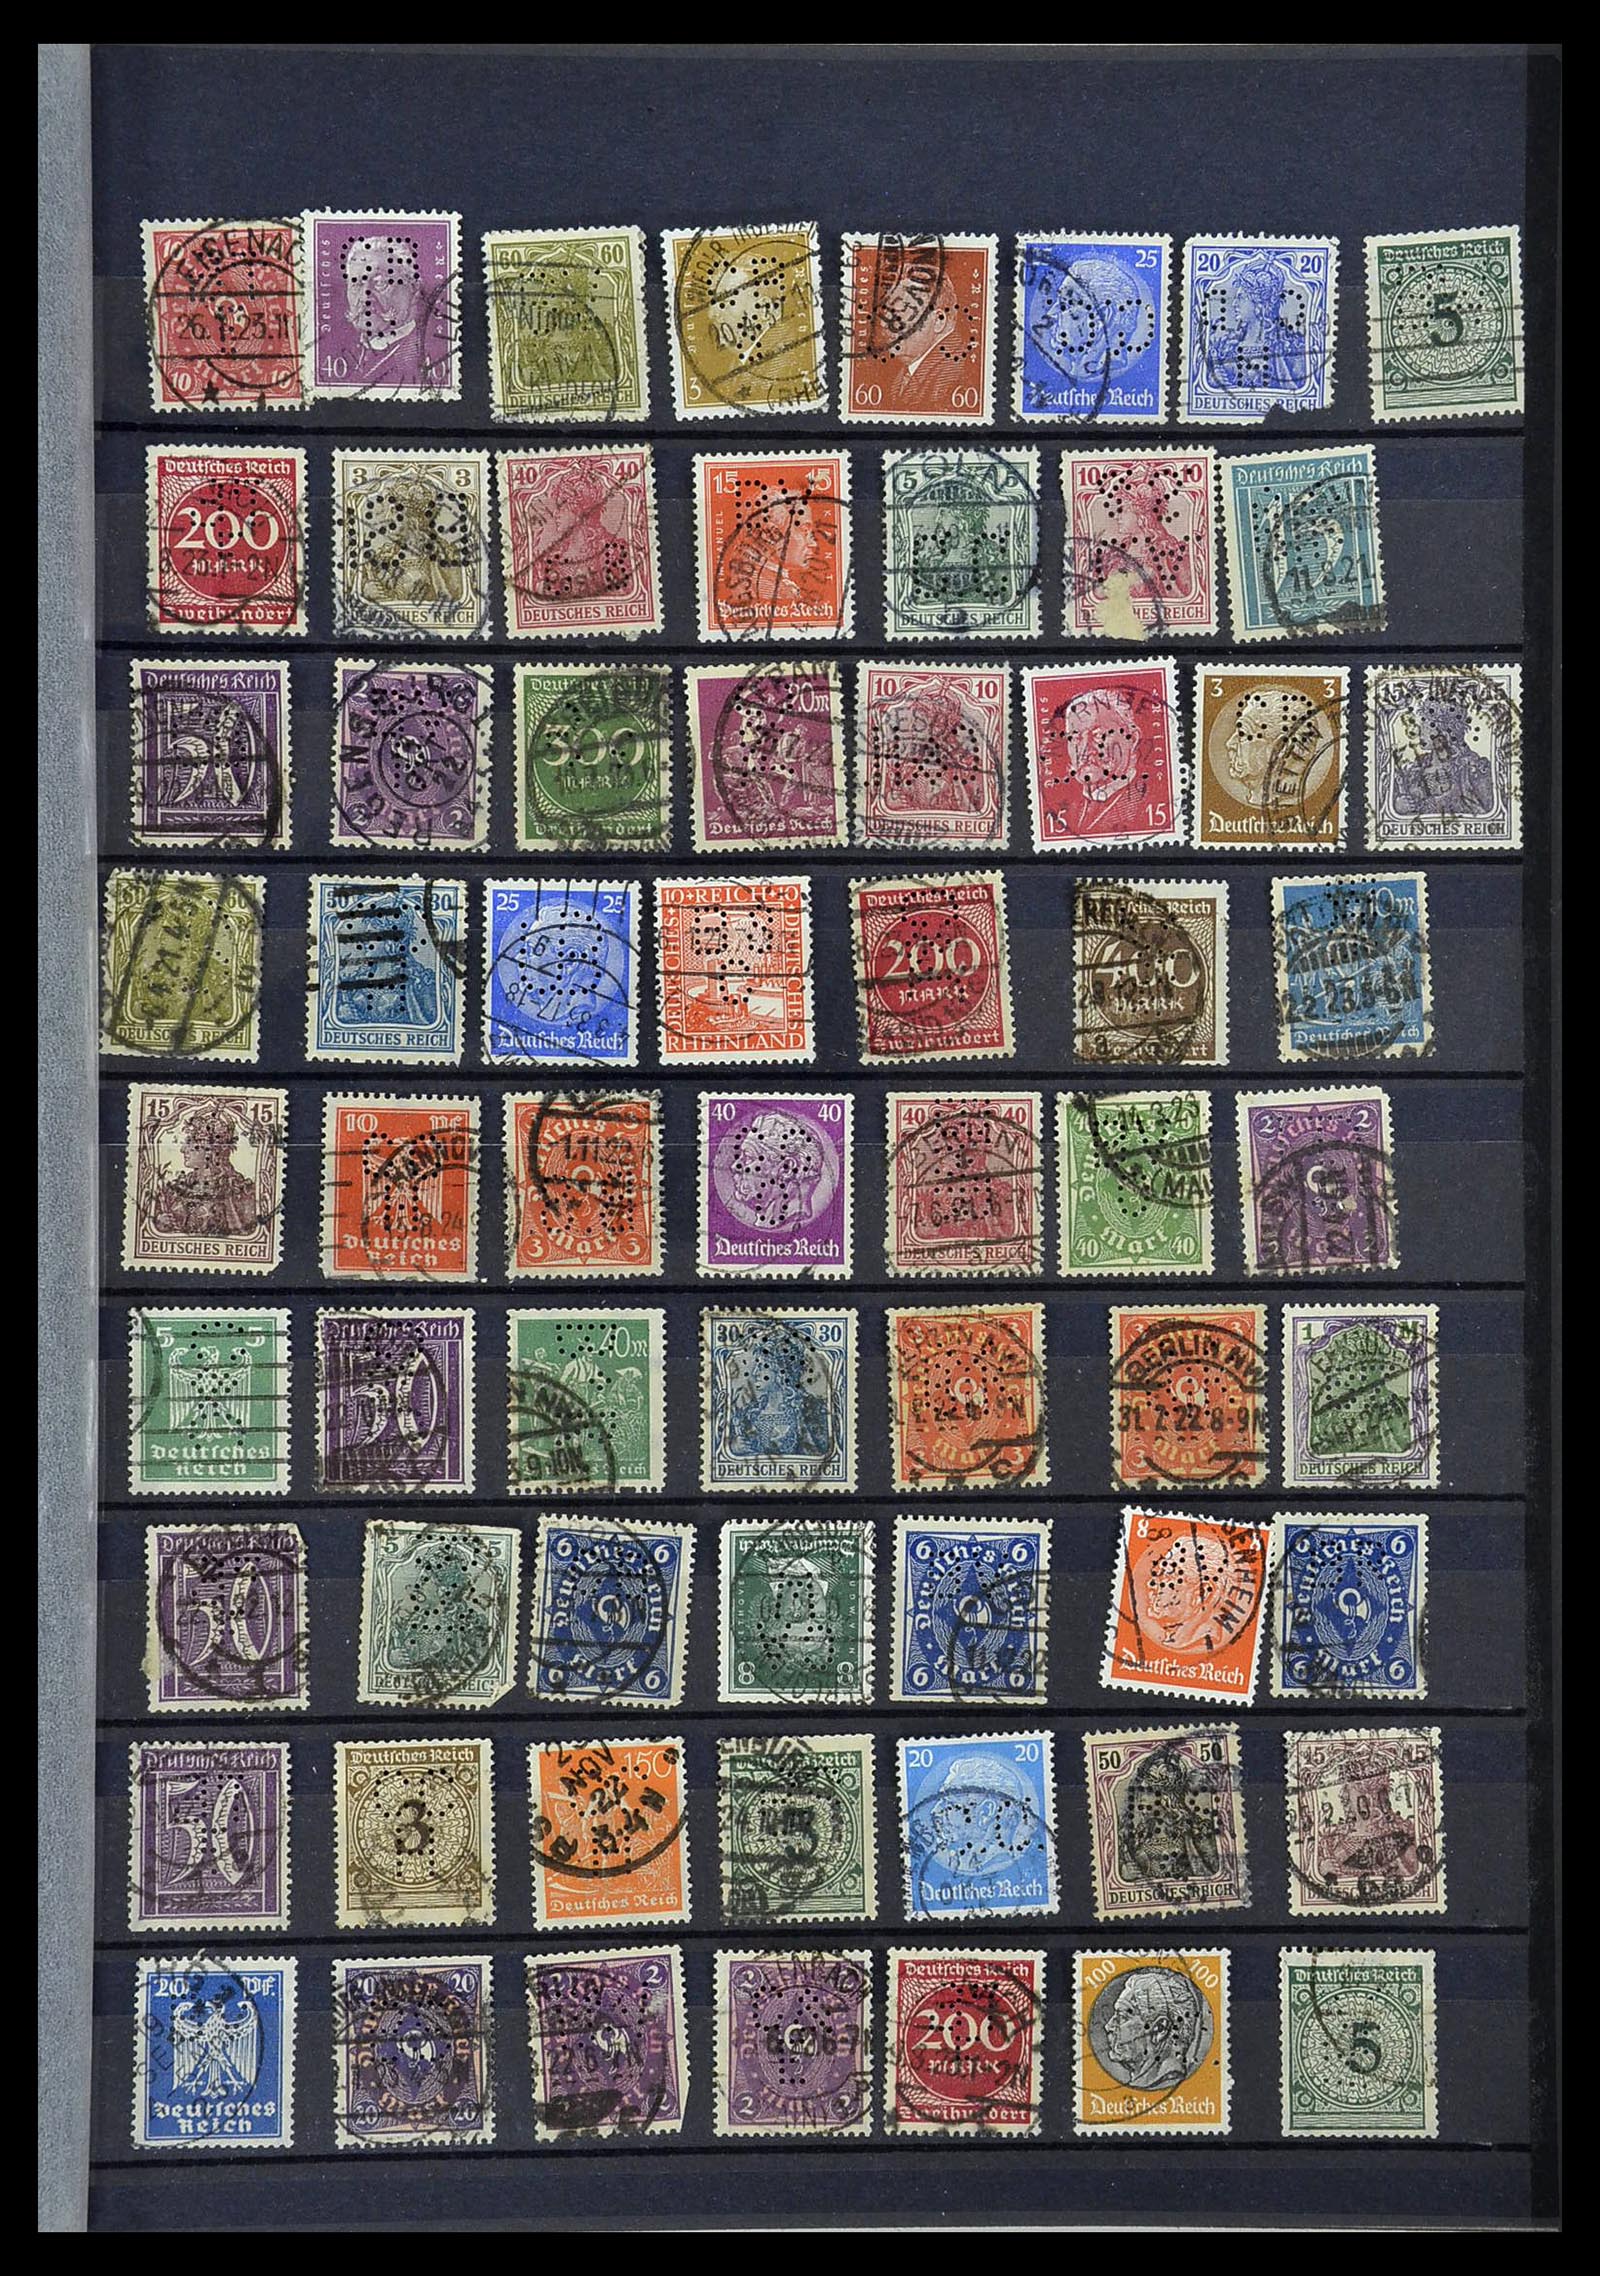 34432 058 - Stamp Collection 34432 German Reich perfins 1900-1933.